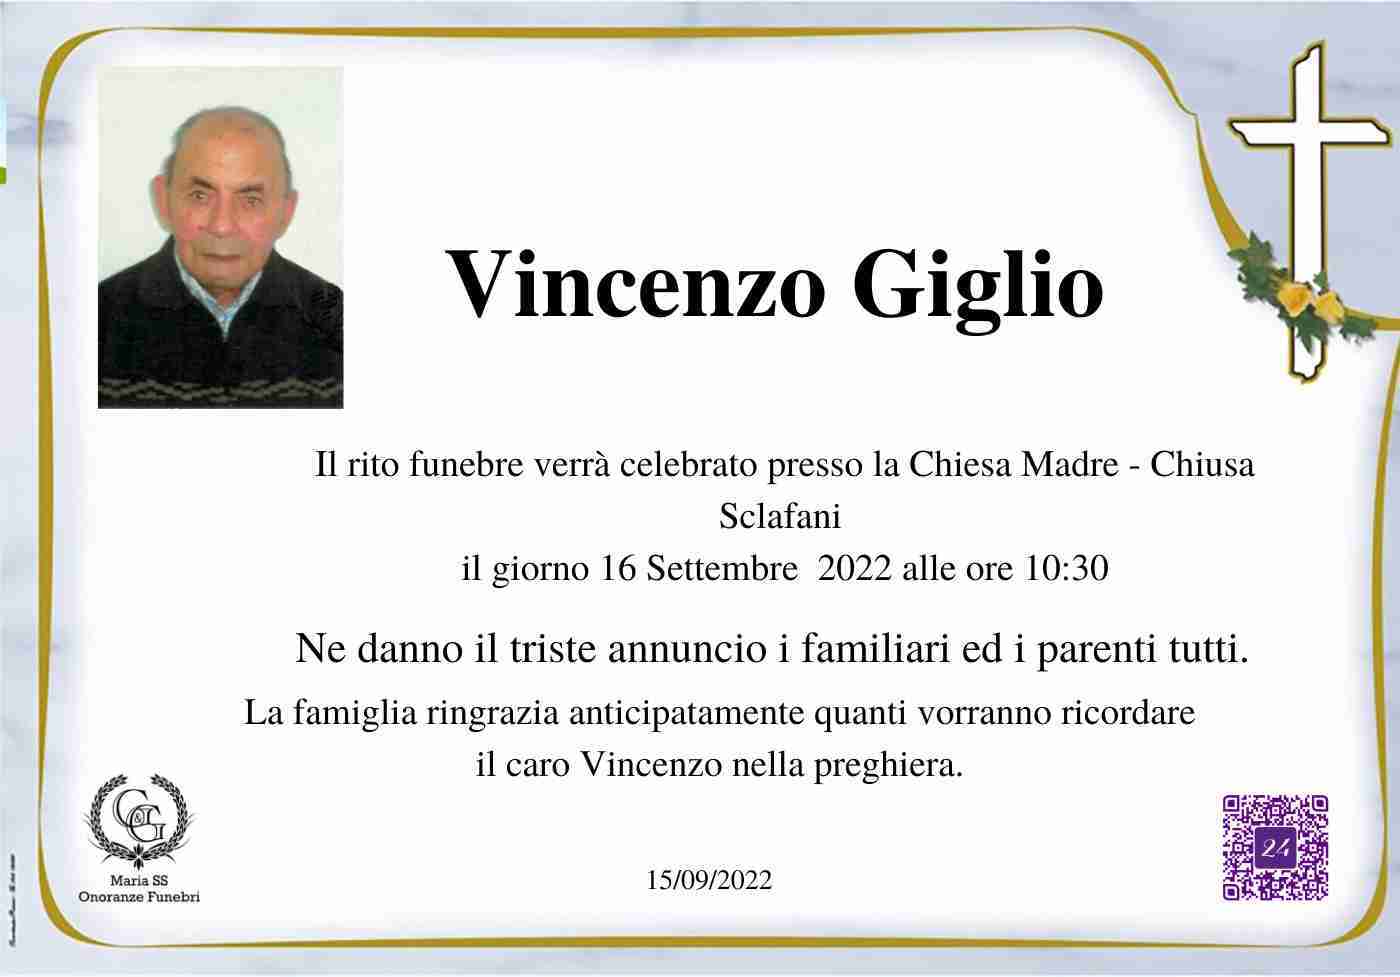 Vincenzo Giglio